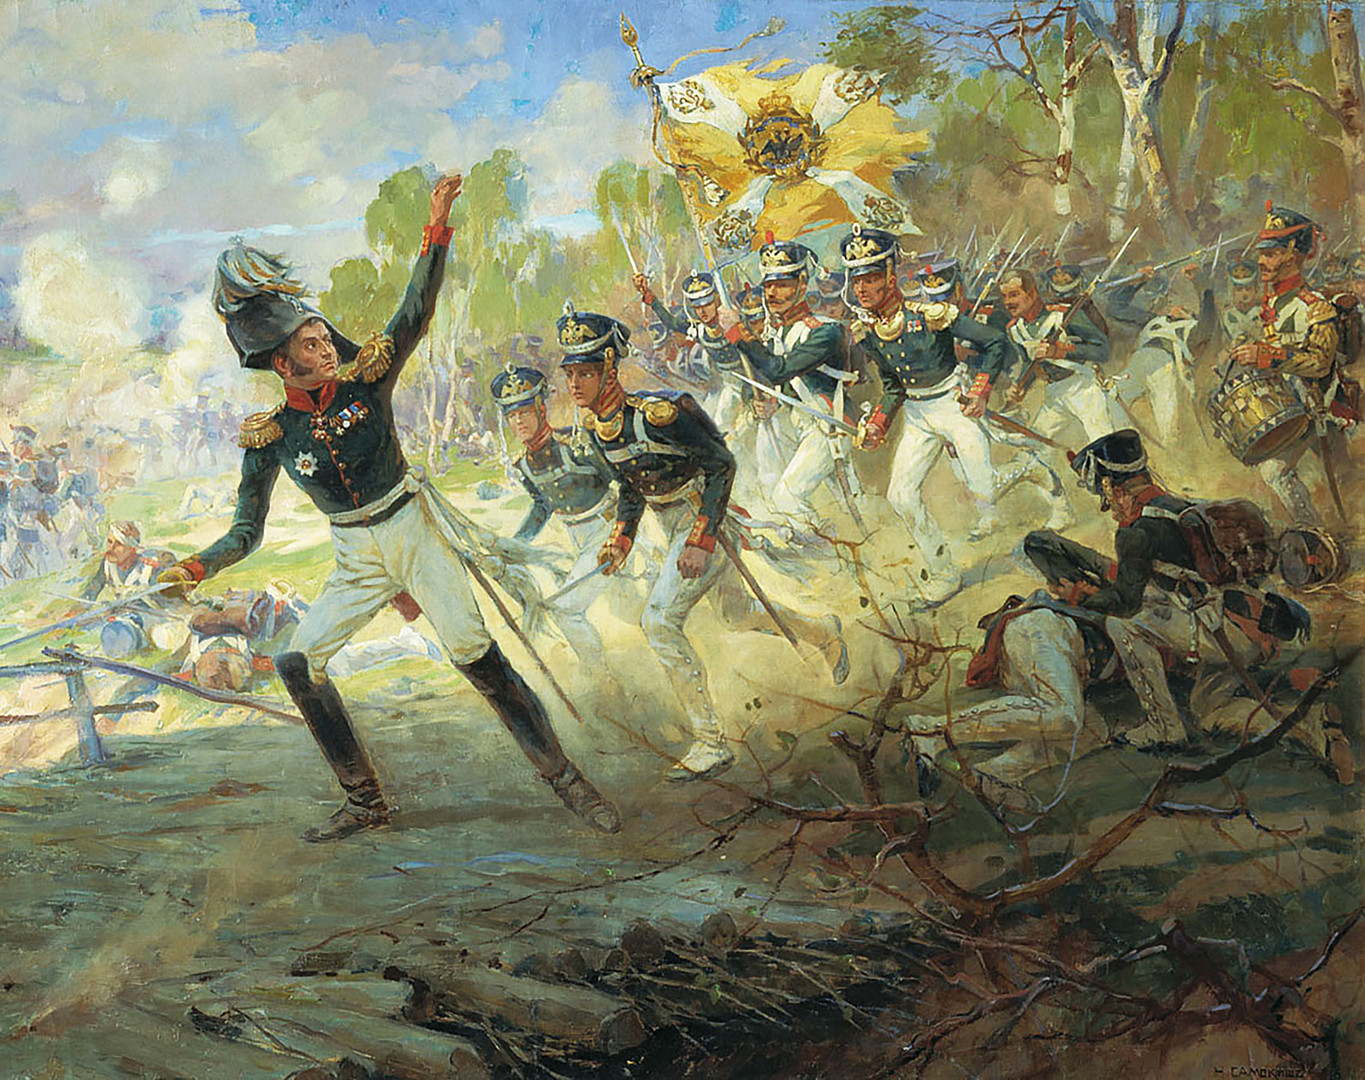 Hingga Perang Dunia II, kemenangan terhadap penjajah yang dipimpin Napoleon Bonaparte dianggap yang paling signifikan yang pernah dialami Rusia